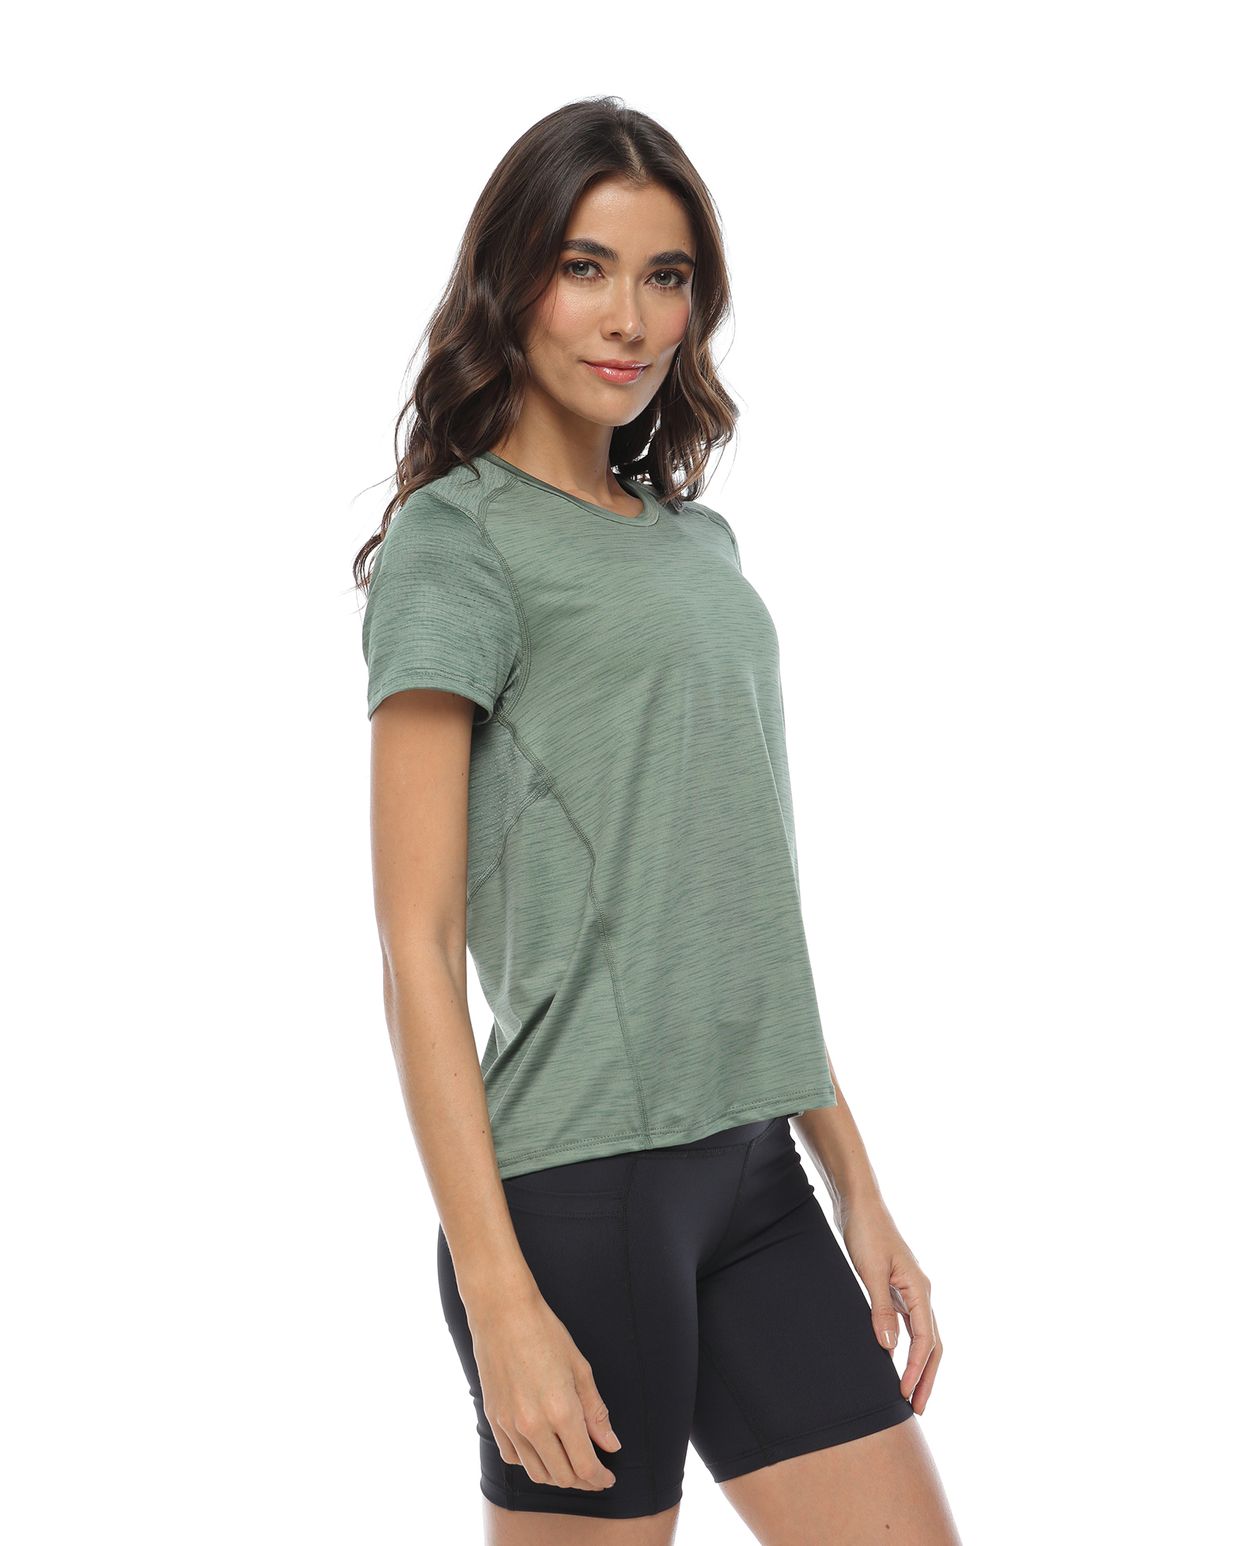 camiseta deportiva mujer, color oliva jaspe - racketball movil